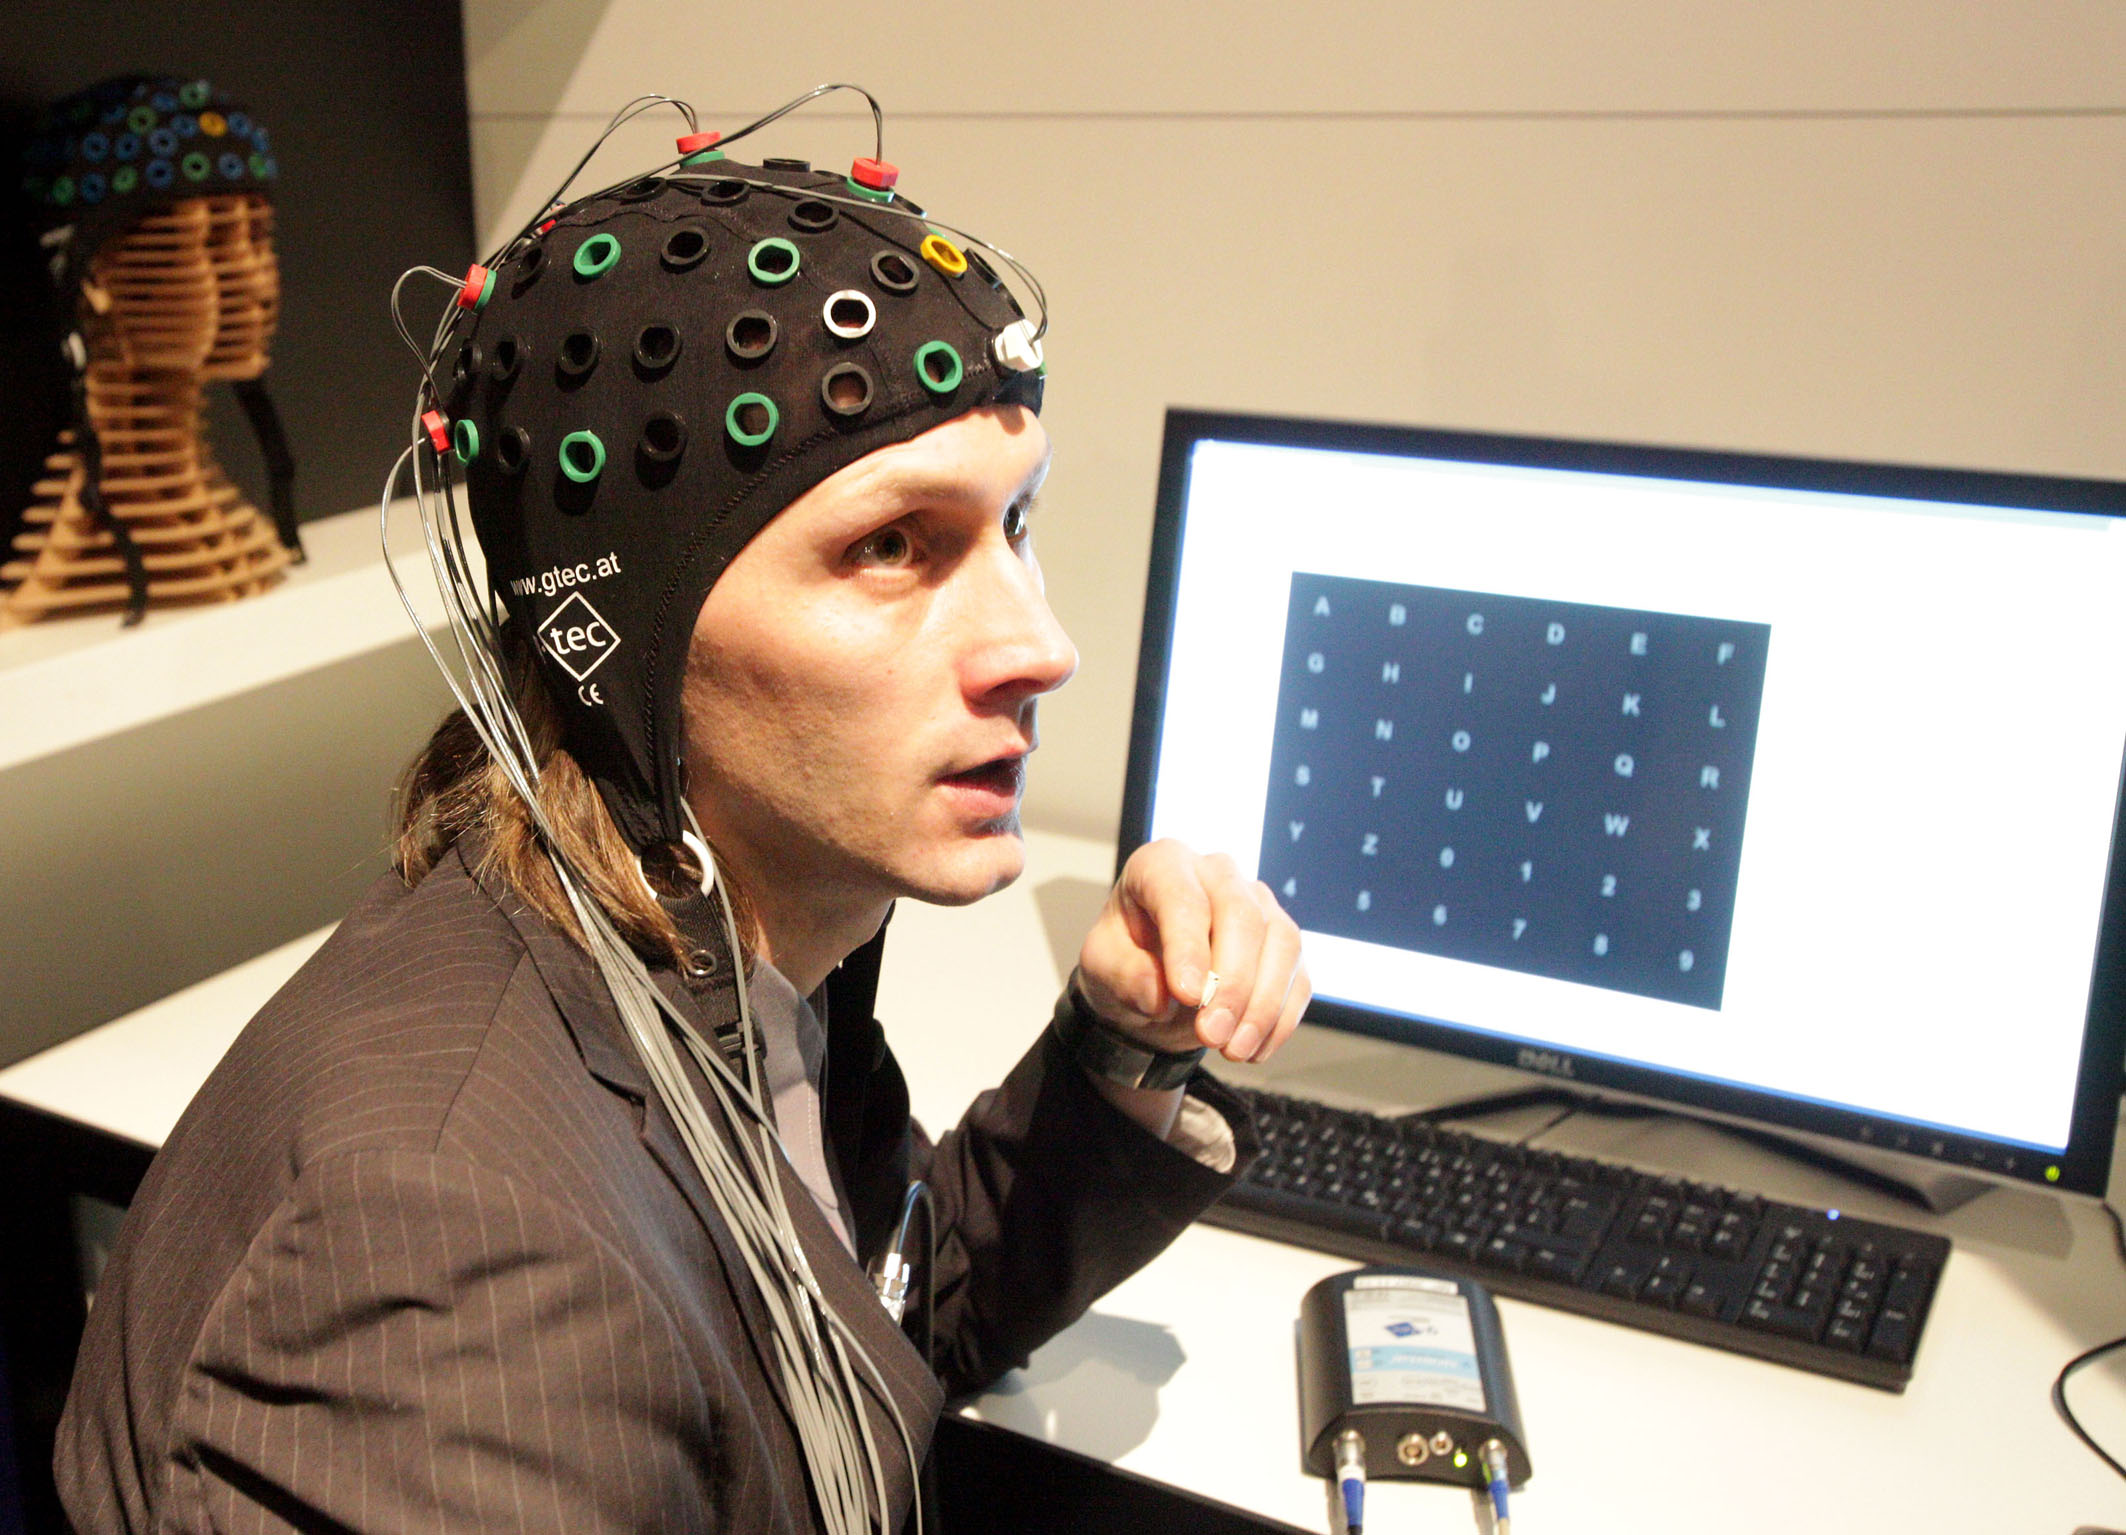 Шлем для ээг. Нейроинтерфейс ЭЭГ. Нейрокомпьютерный Интерфейс. Нейроинтерфейс мозг-компьютер. Шлем для управления силой мысли.